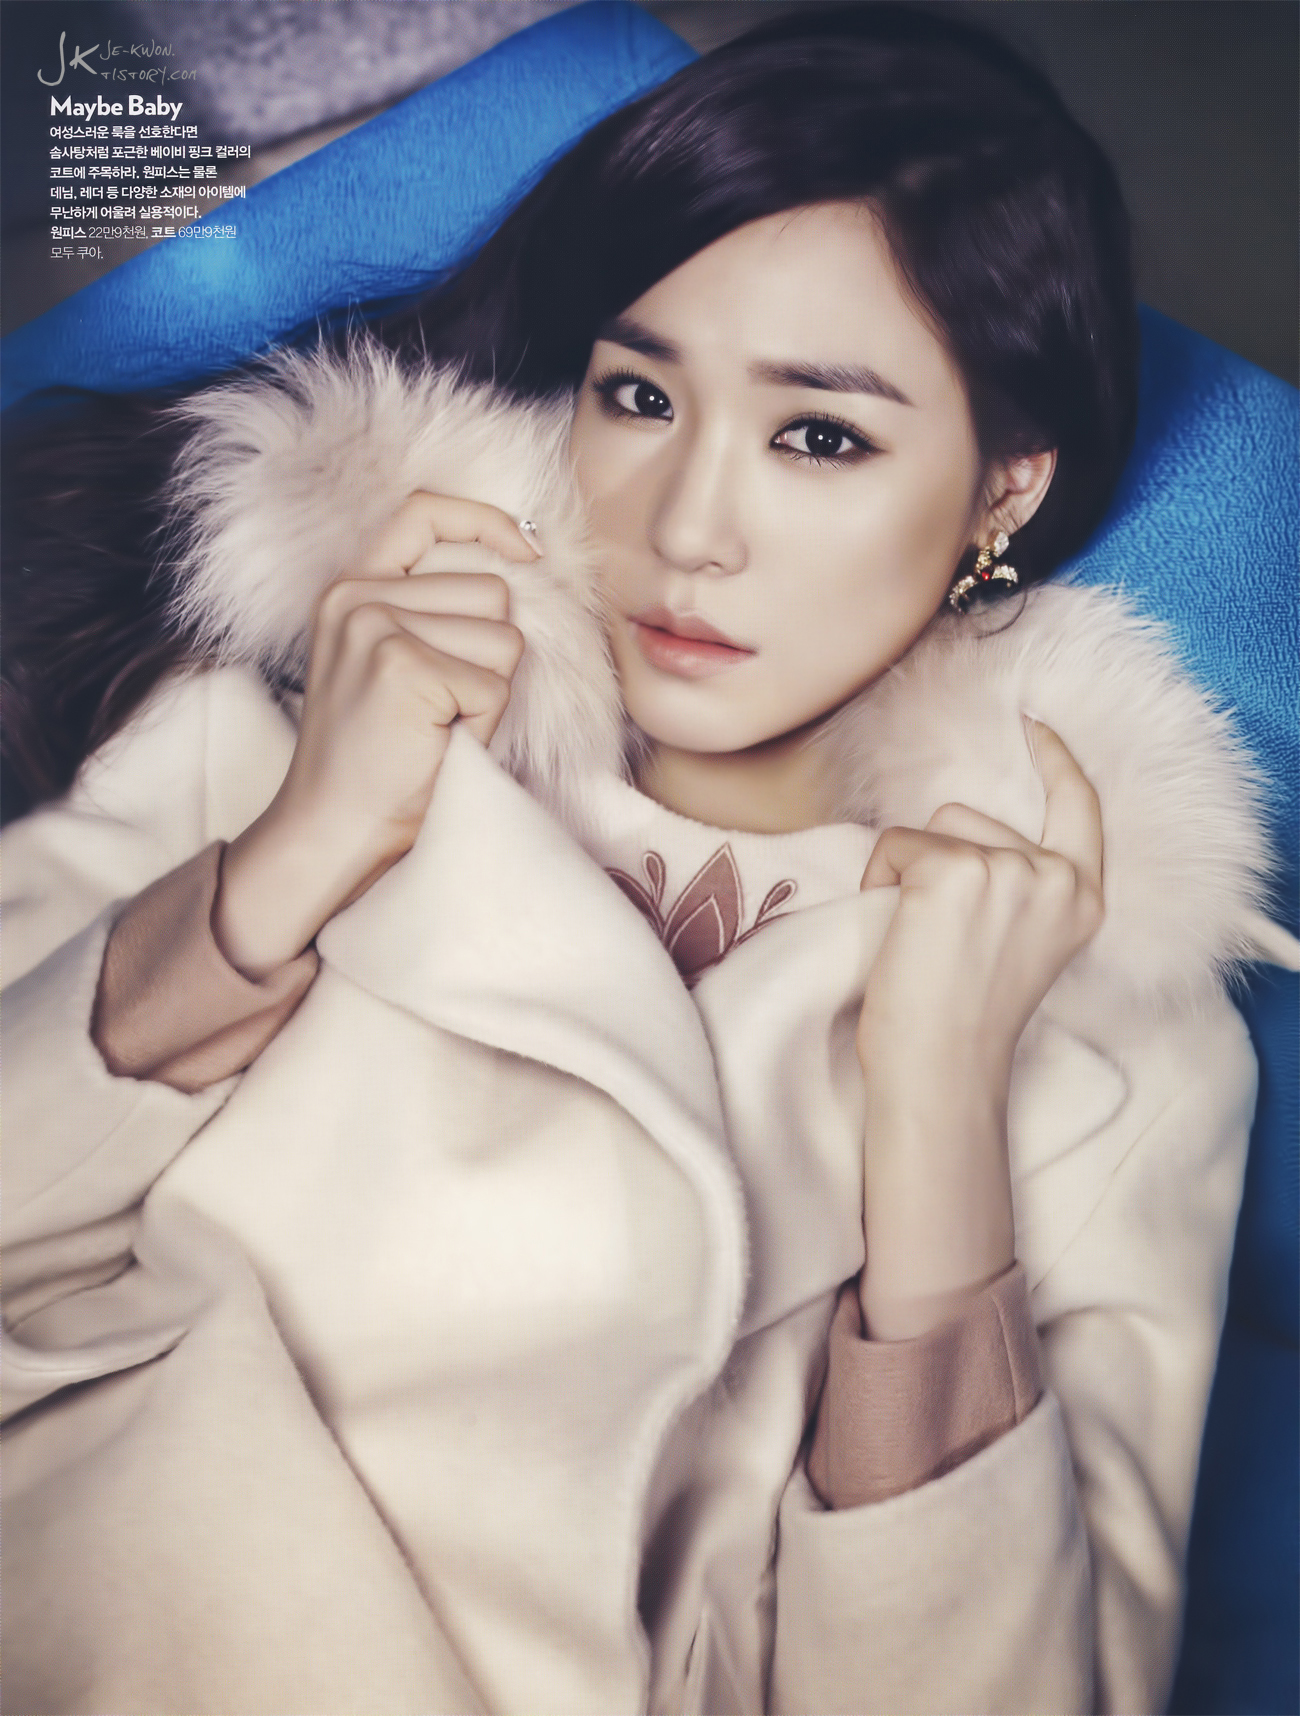 [PIC][20-10-2013]Tiffany xuất hiện trên ấn phẩm tháng 11 của tạp chí "Cosmopolitan" 2640953A5264E2C6111CA4